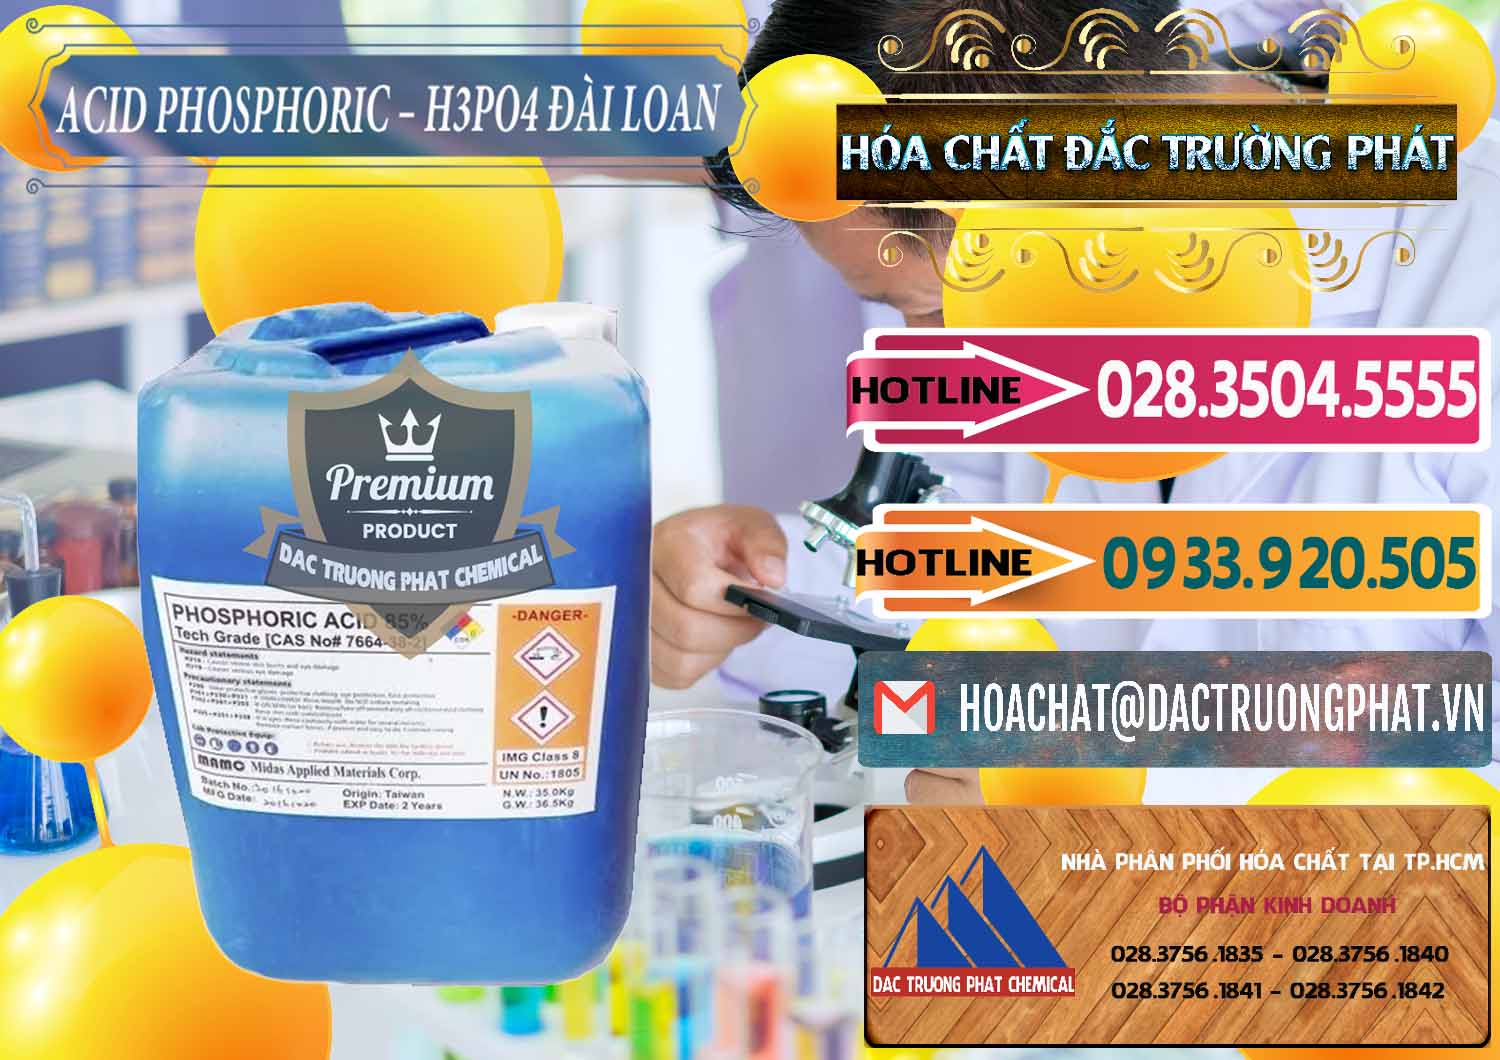 Cty chuyên bán _ cung cấp Axit Phosphoric - Acid Phosphoric H3PO4 85% Đài Loan Taiwan - 0351 - Chuyên nhập khẩu - phân phối hóa chất tại TP.HCM - dactruongphat.vn